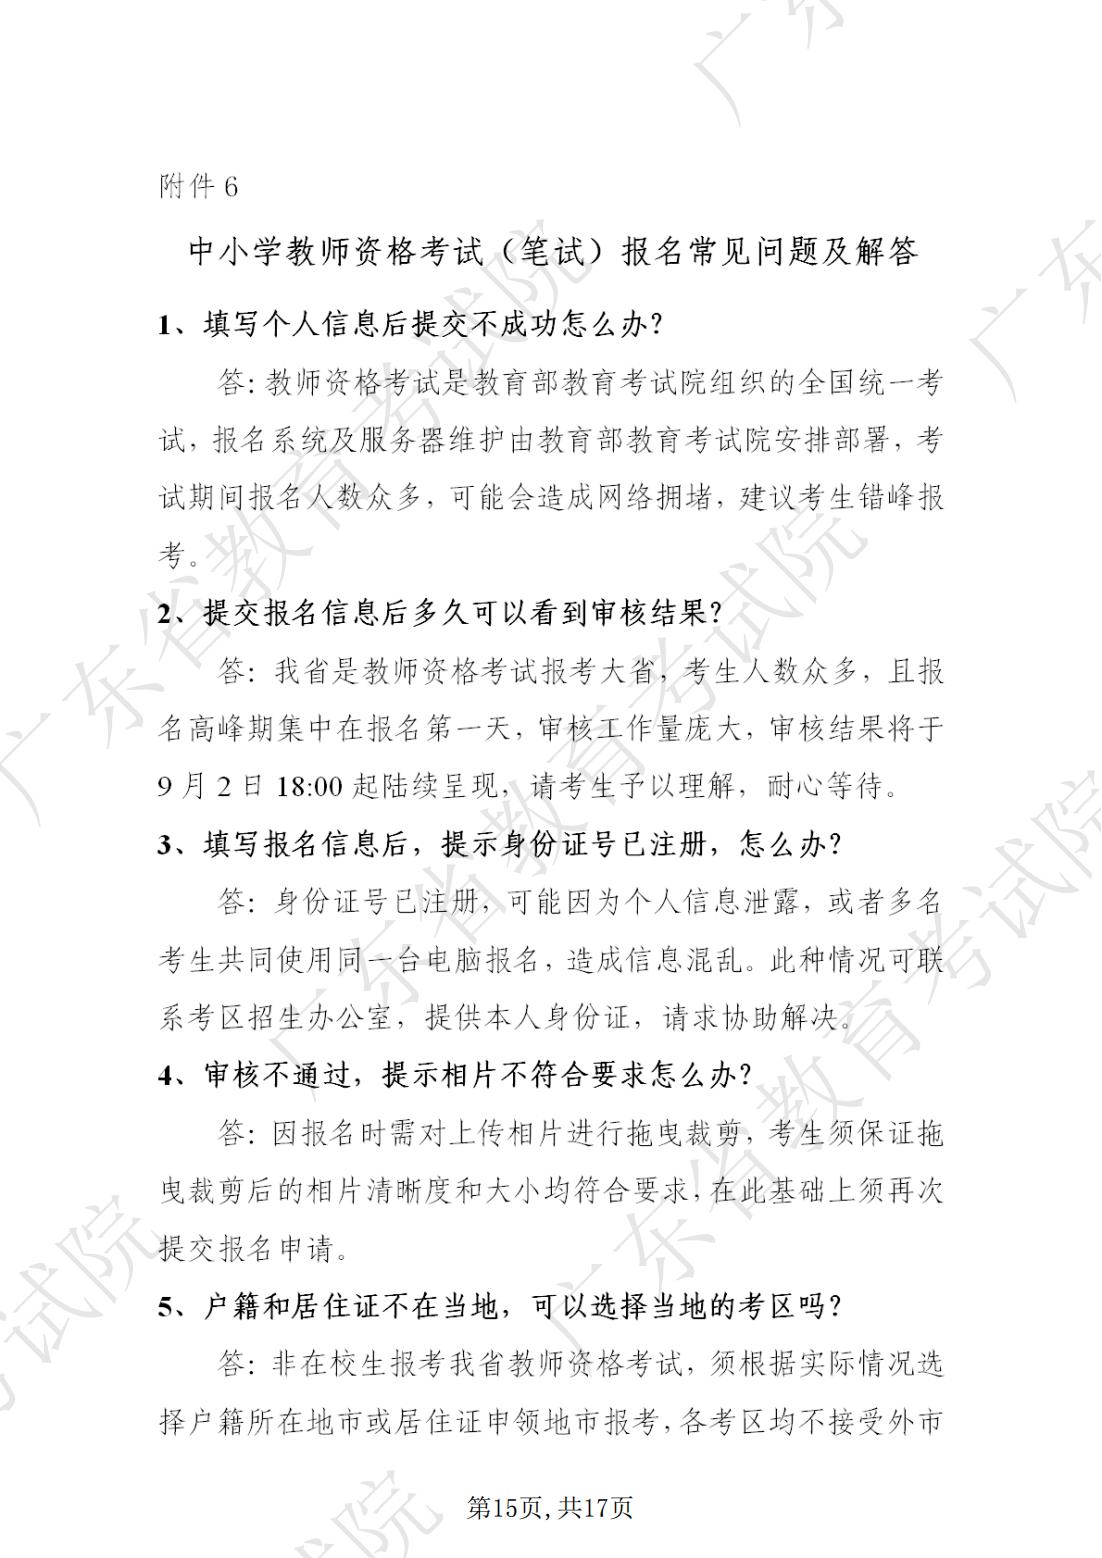 2022-08-18  关于发布《广东省2022年下半年中小学教师资格考试笔试通告》的请示_14.jpg